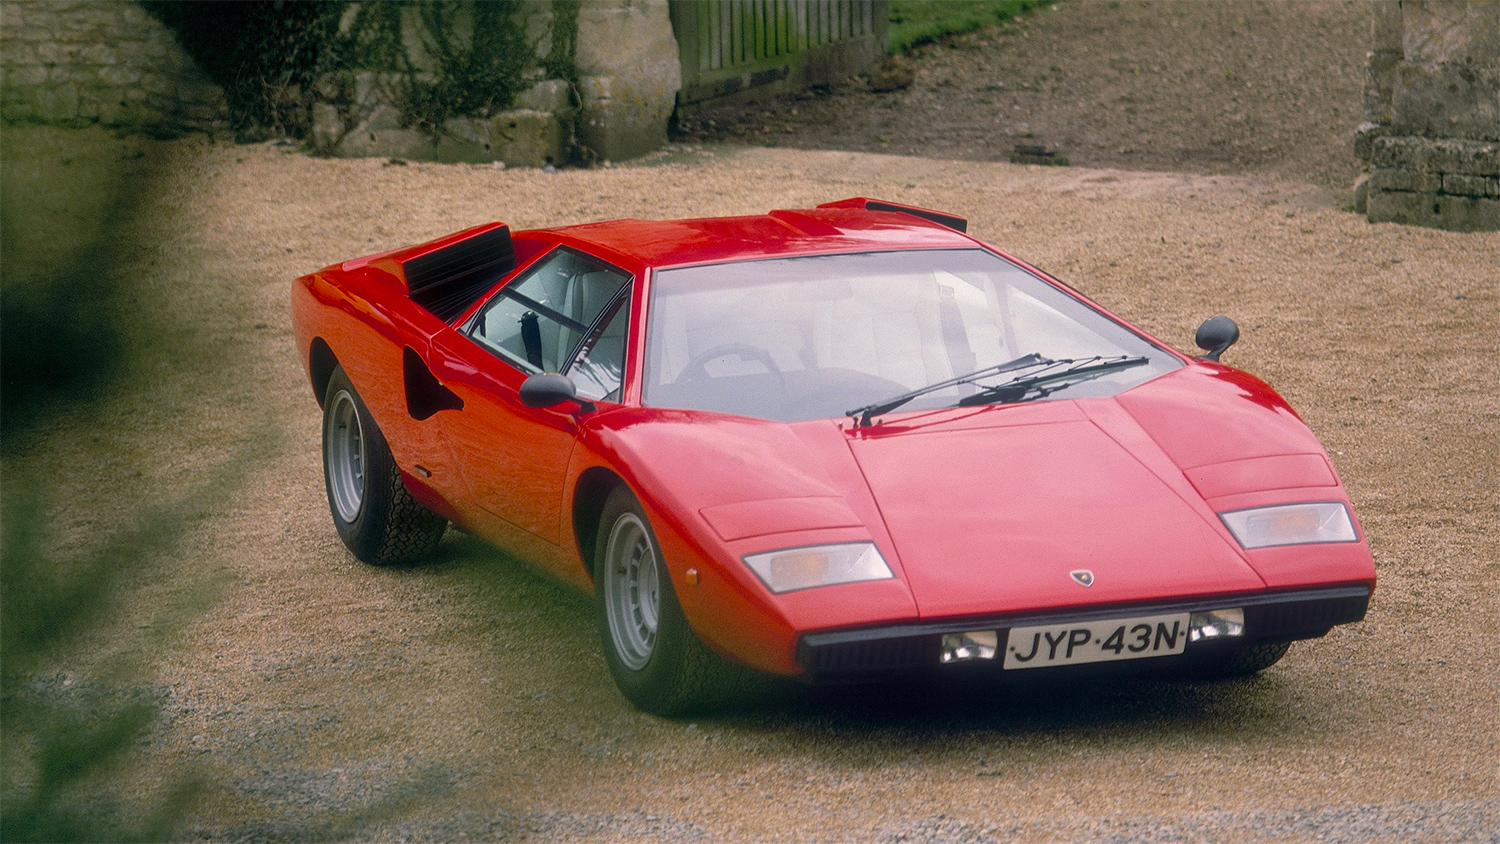 <b>Lamborghini Countach</b> (годы выпуска: 1974&nbsp;- 1990). Дизайн автомобиля разрабатывал&nbsp;Марчелло Гандини, он же ранее разрабатывал дизайн&nbsp;Miura и Jarama. В те годы Гандини был молодым и не очень опытным дизайнером, он мало ориентировался в&nbsp;эргономике&nbsp;автомобиля и оригинальный дизайн Countach&nbsp;&mdash; это его представление автомобиля, практически не искажённое правилами и традициями автомобилестроения. Countach получился угловатым, широким и низким. Фактически корпус состоял из множества трапециевидных плоскостей. Хотя в автомобиле и присутствовали плавные линии, они не смягчали внешней угловатости.<br>
Двери автомобиля, своеобразная визитная карточка Countach, а впоследствии и других моделей Ламборгини, были&nbsp;гильотинного типа&nbsp;(«двери-ножницы»)&nbsp;&mdash; для открытия дверь поднималась и отталкивалась вперёд. Хотя это и оказалось интересным дизайнерским решением, в первую очередь это было сделано из-за большой ширины автомобиля: стандартные двери в данном случае были бы весьма неудобны.